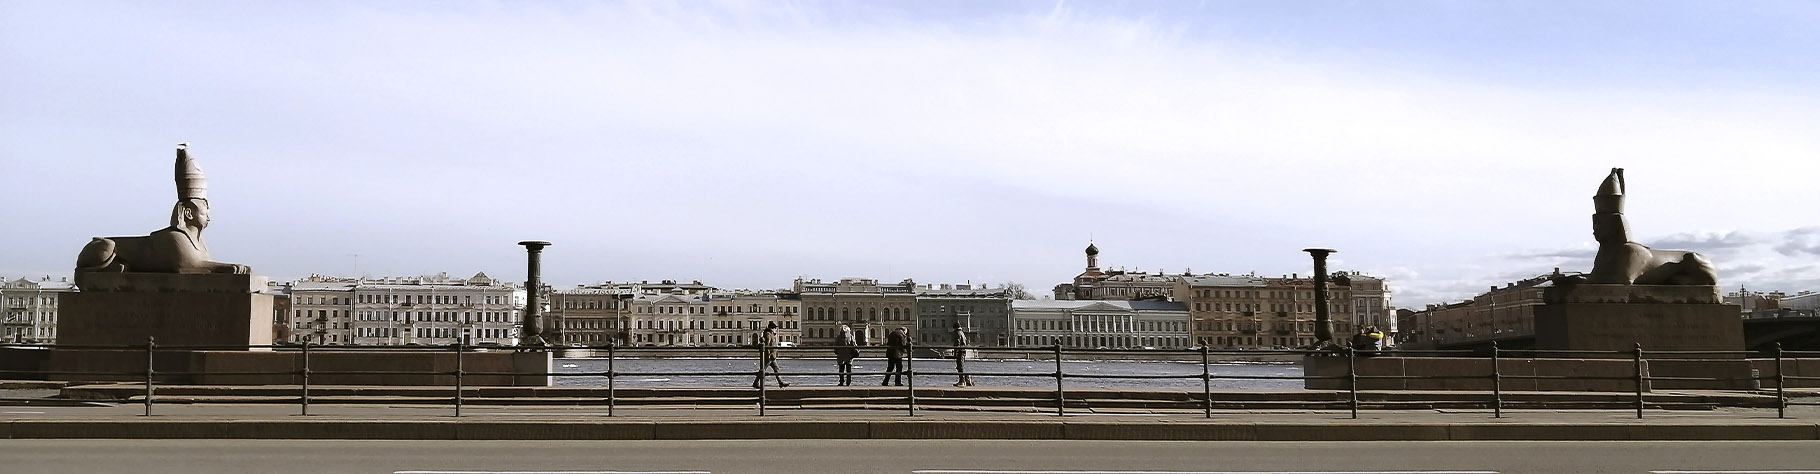 Сфинксы на Университетской набережной Санкт-Петербурга